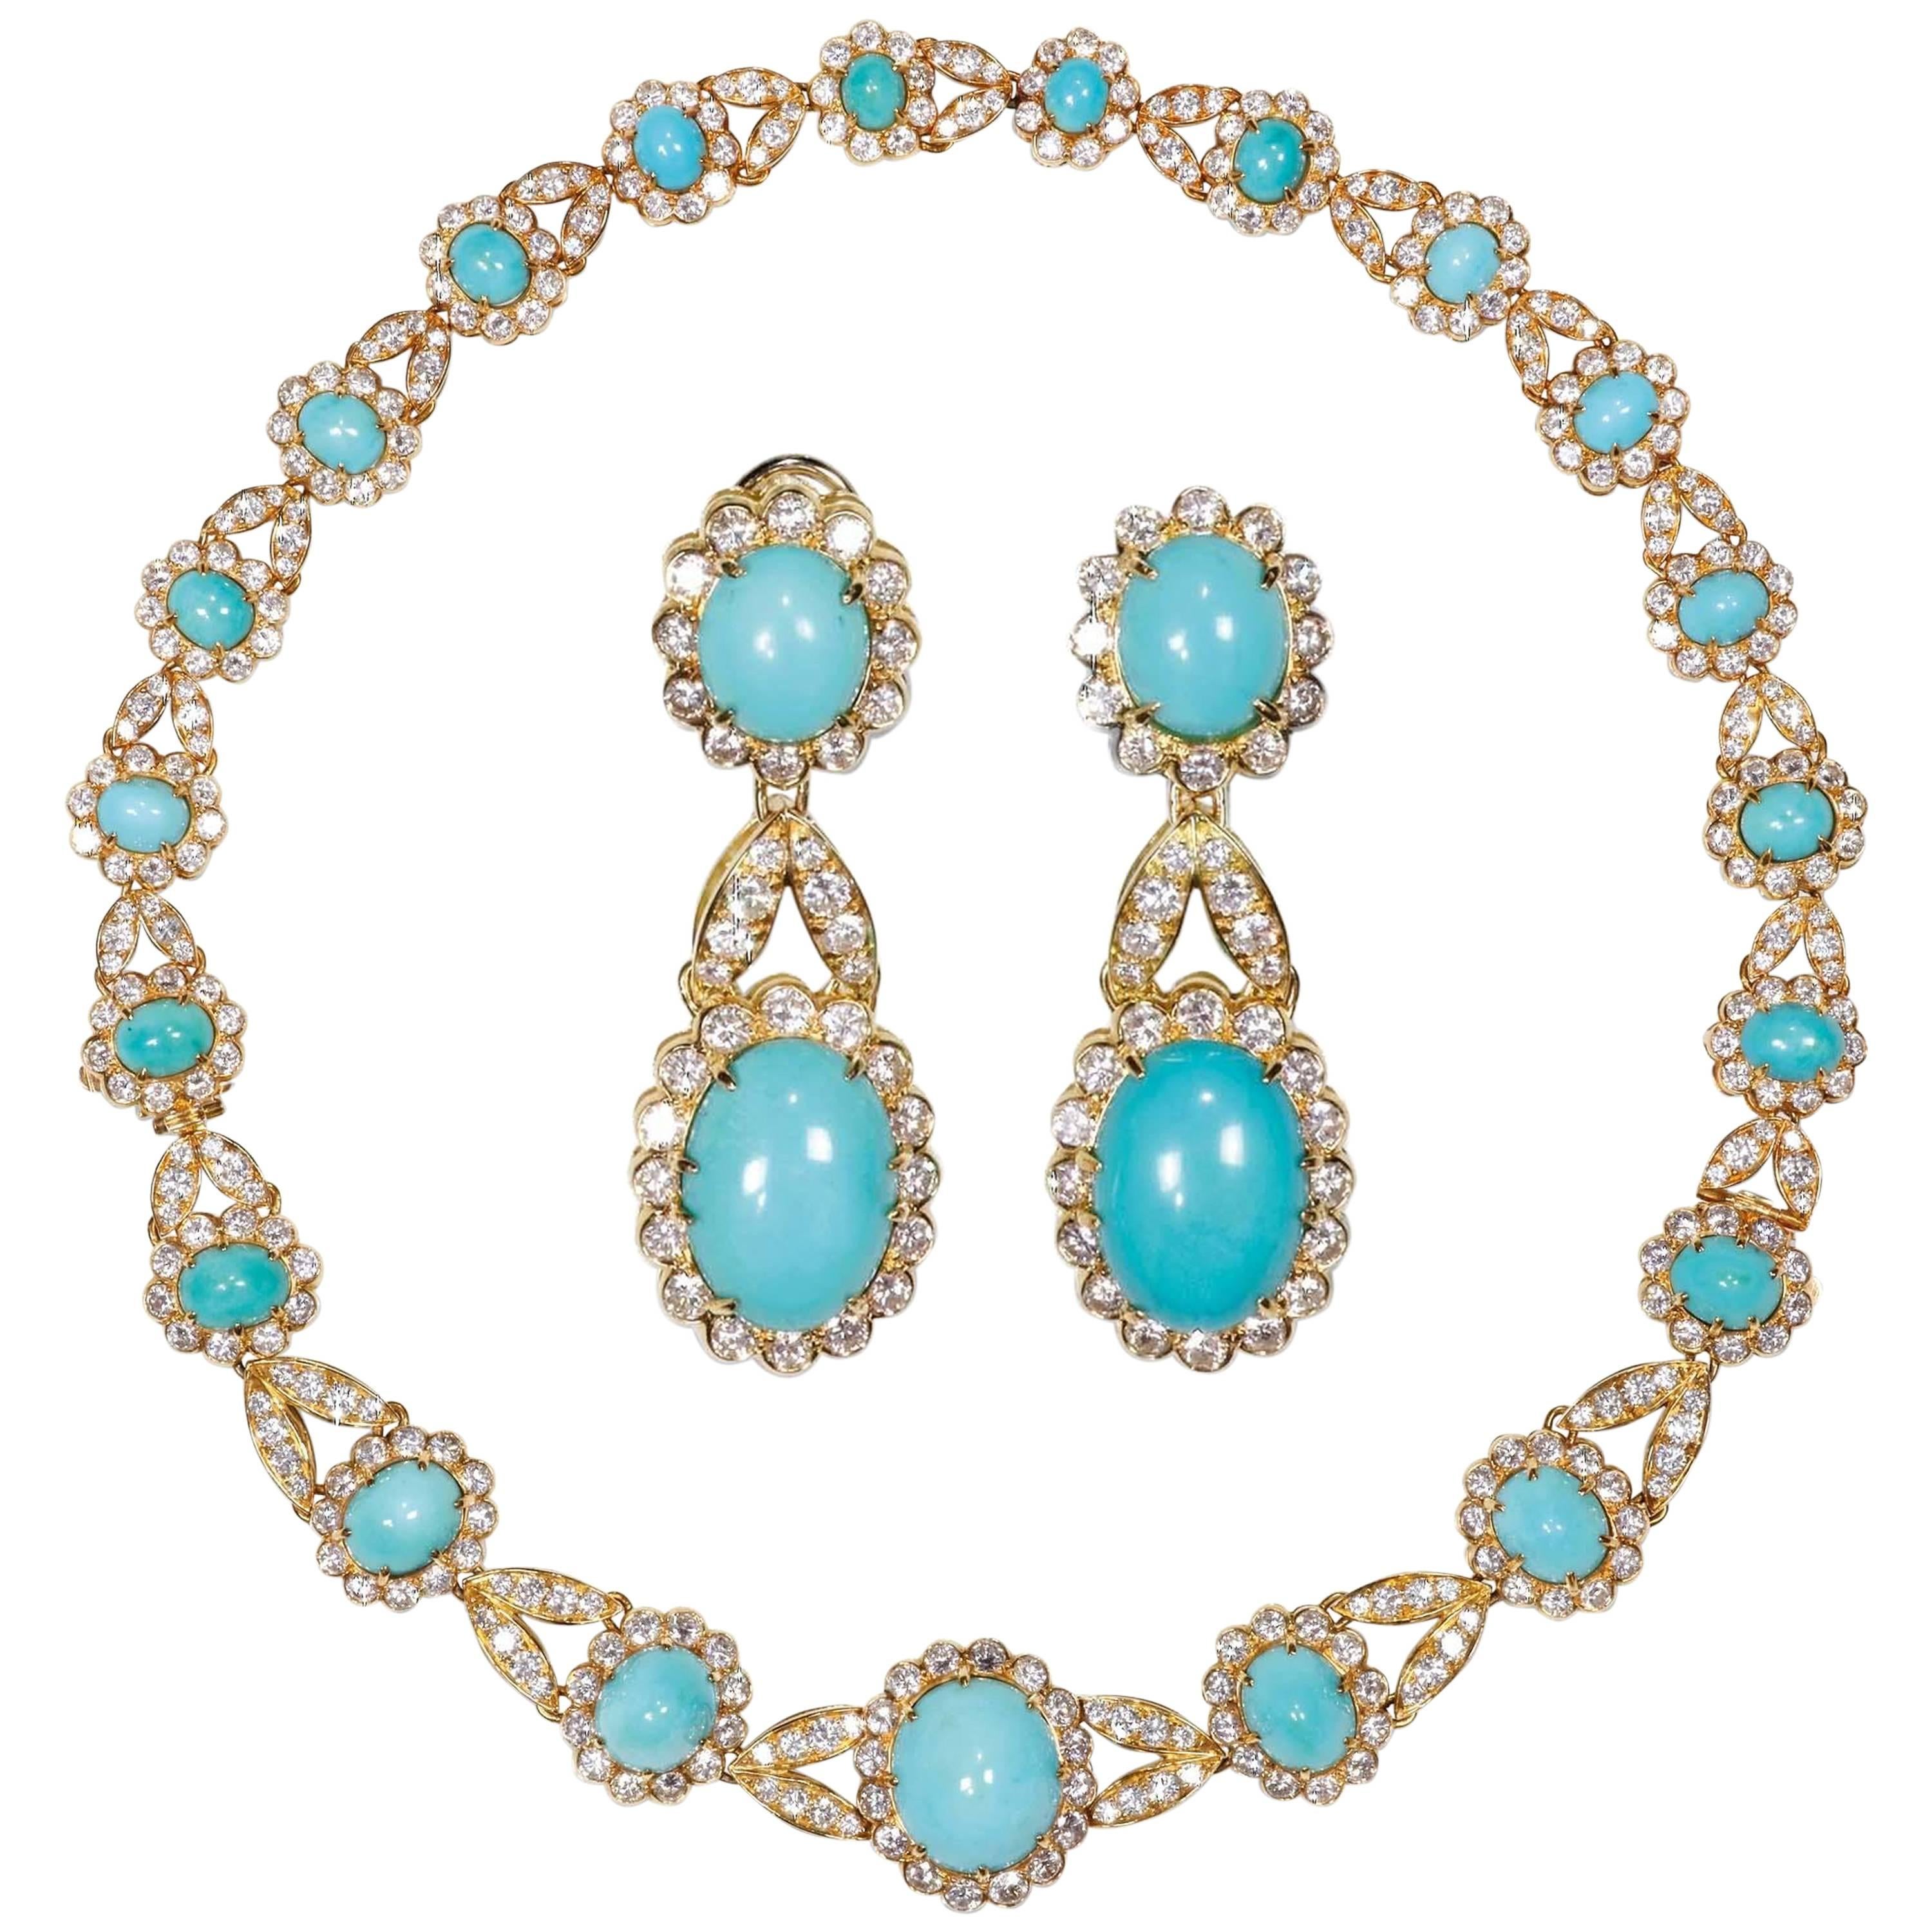 Iconic Van Cleef & Arpels Turquoise Diamond Set